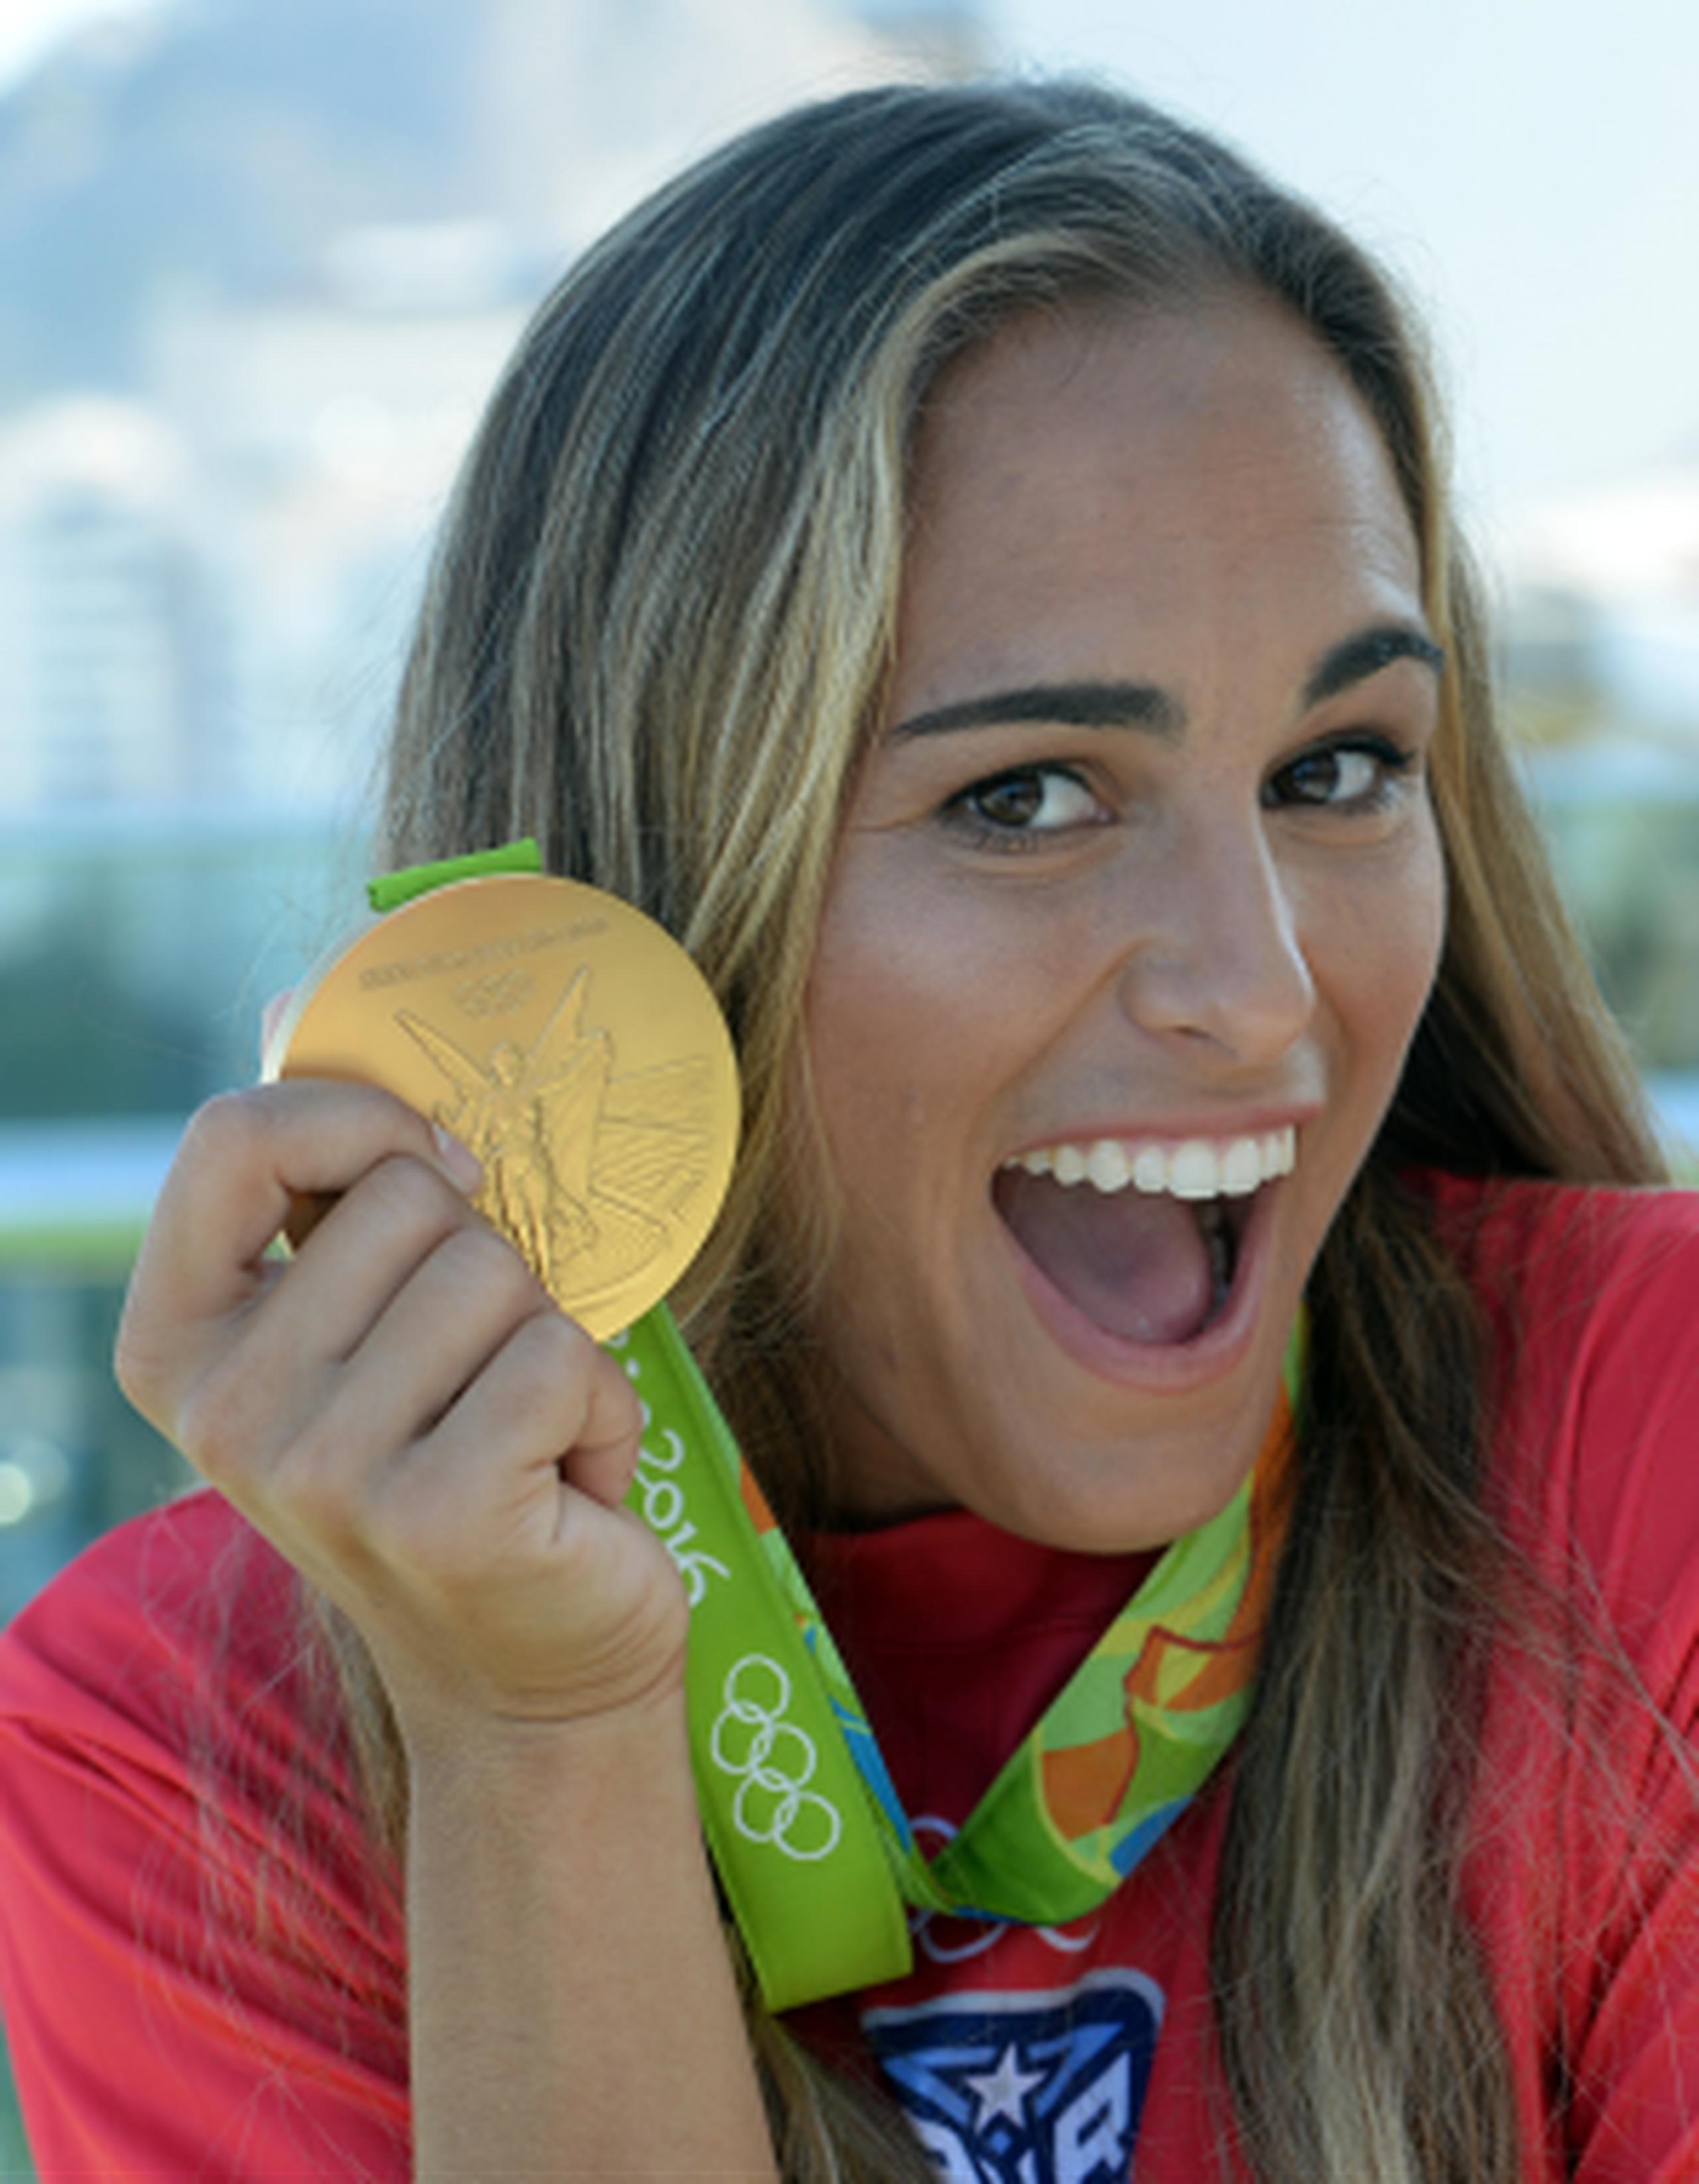 El gran momento de Puerto Rico en Río 2016 fue la conquista por Mónica Puig del primer oro olímpico en la historia del Comité Olímpico isleño. (Archivo)